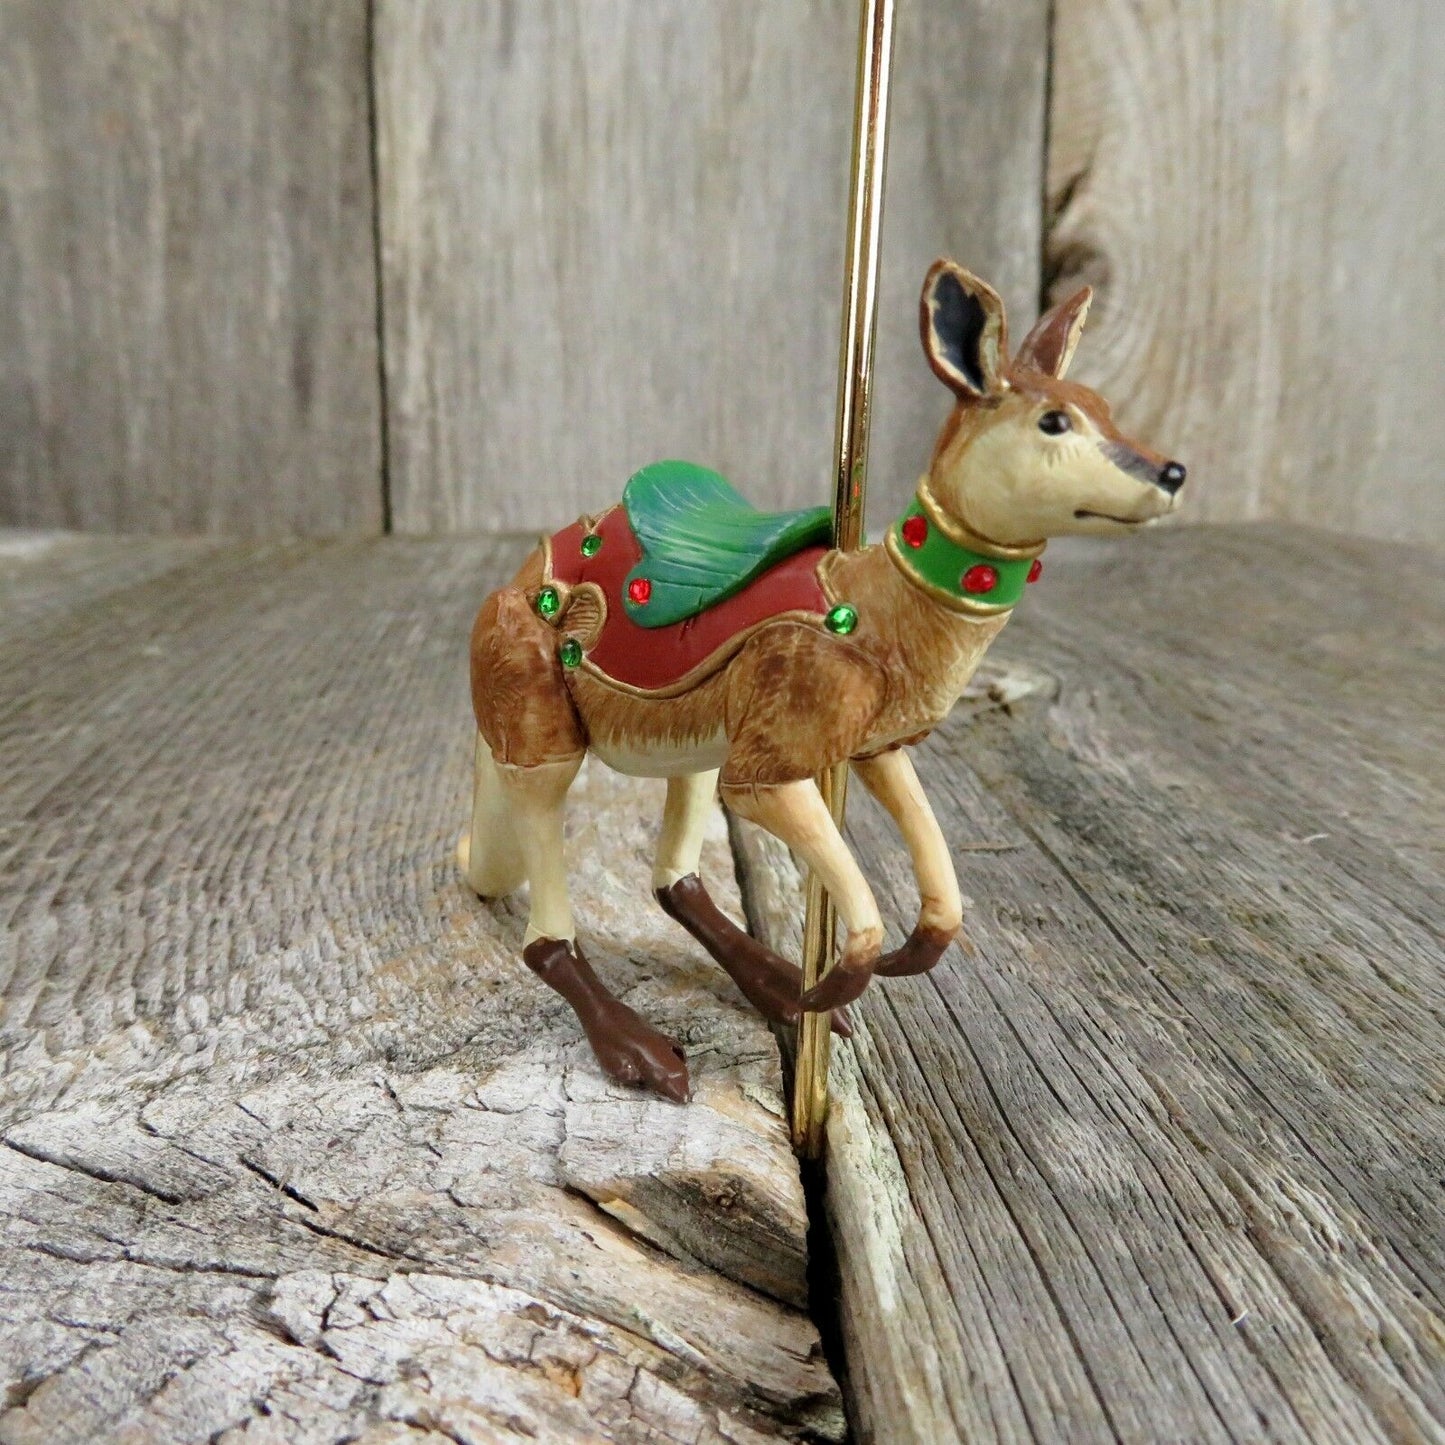 Happy Kangaroo Carousel Ride Hallmark Keepsake Christmas Tree Ornament 2008 - At Grandma's Table